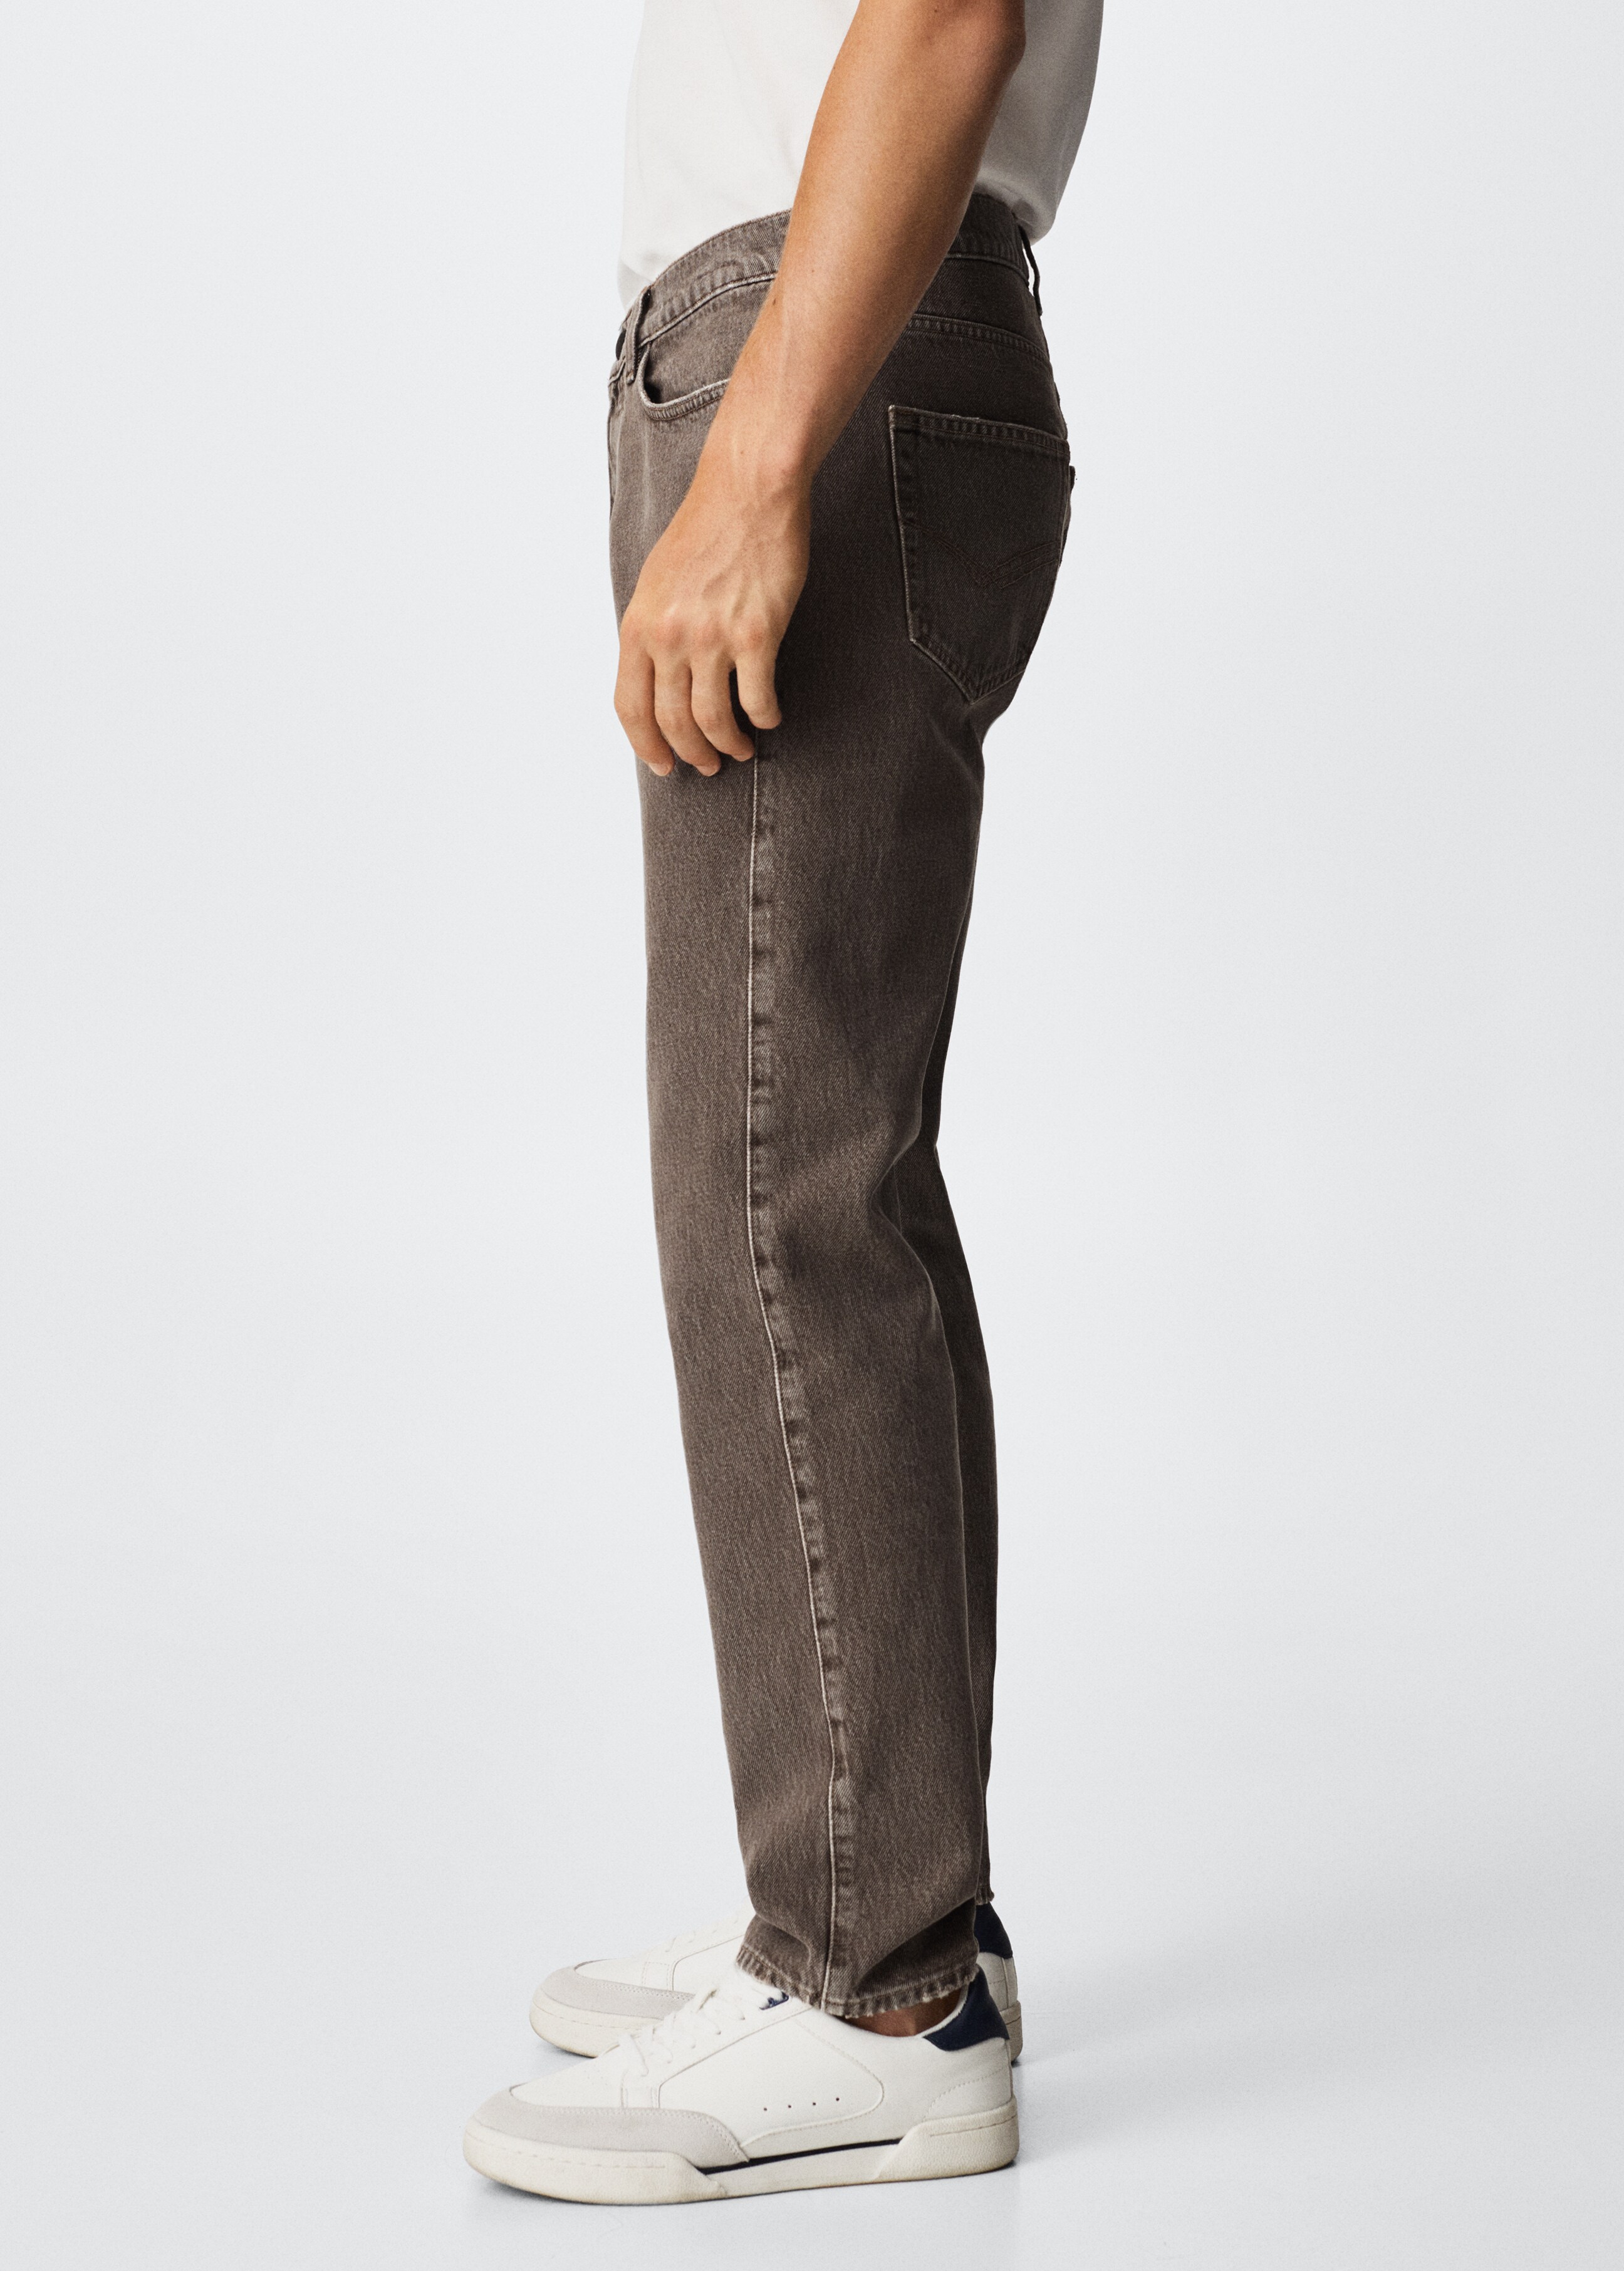 割引設定RHC Vintage Straight Denim Pants 23インチ パンツ